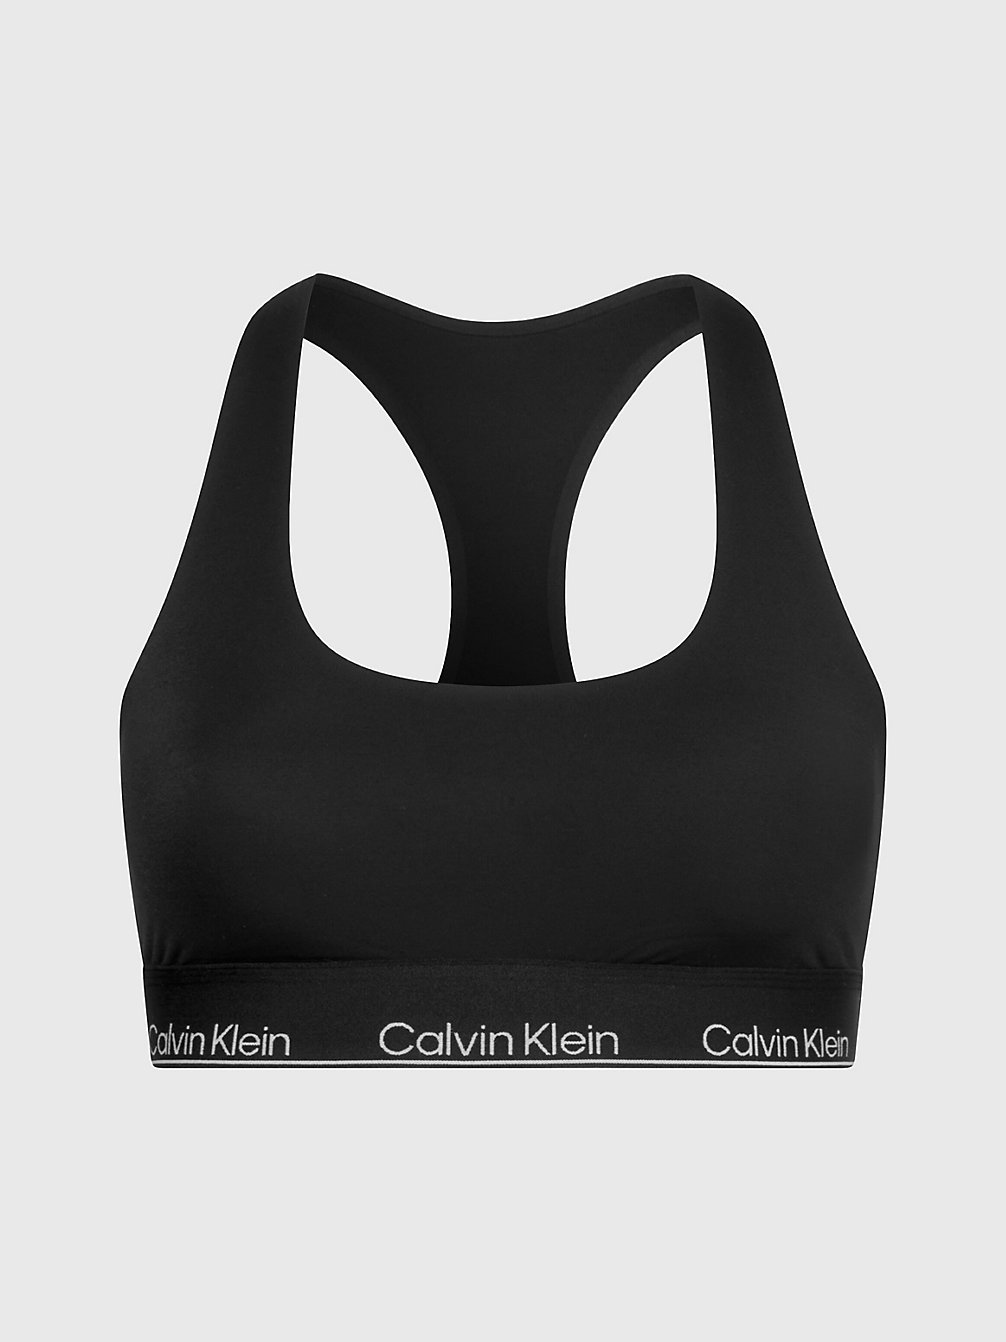 BLACK Bralette - Modern Performance undefined Damen Calvin Klein